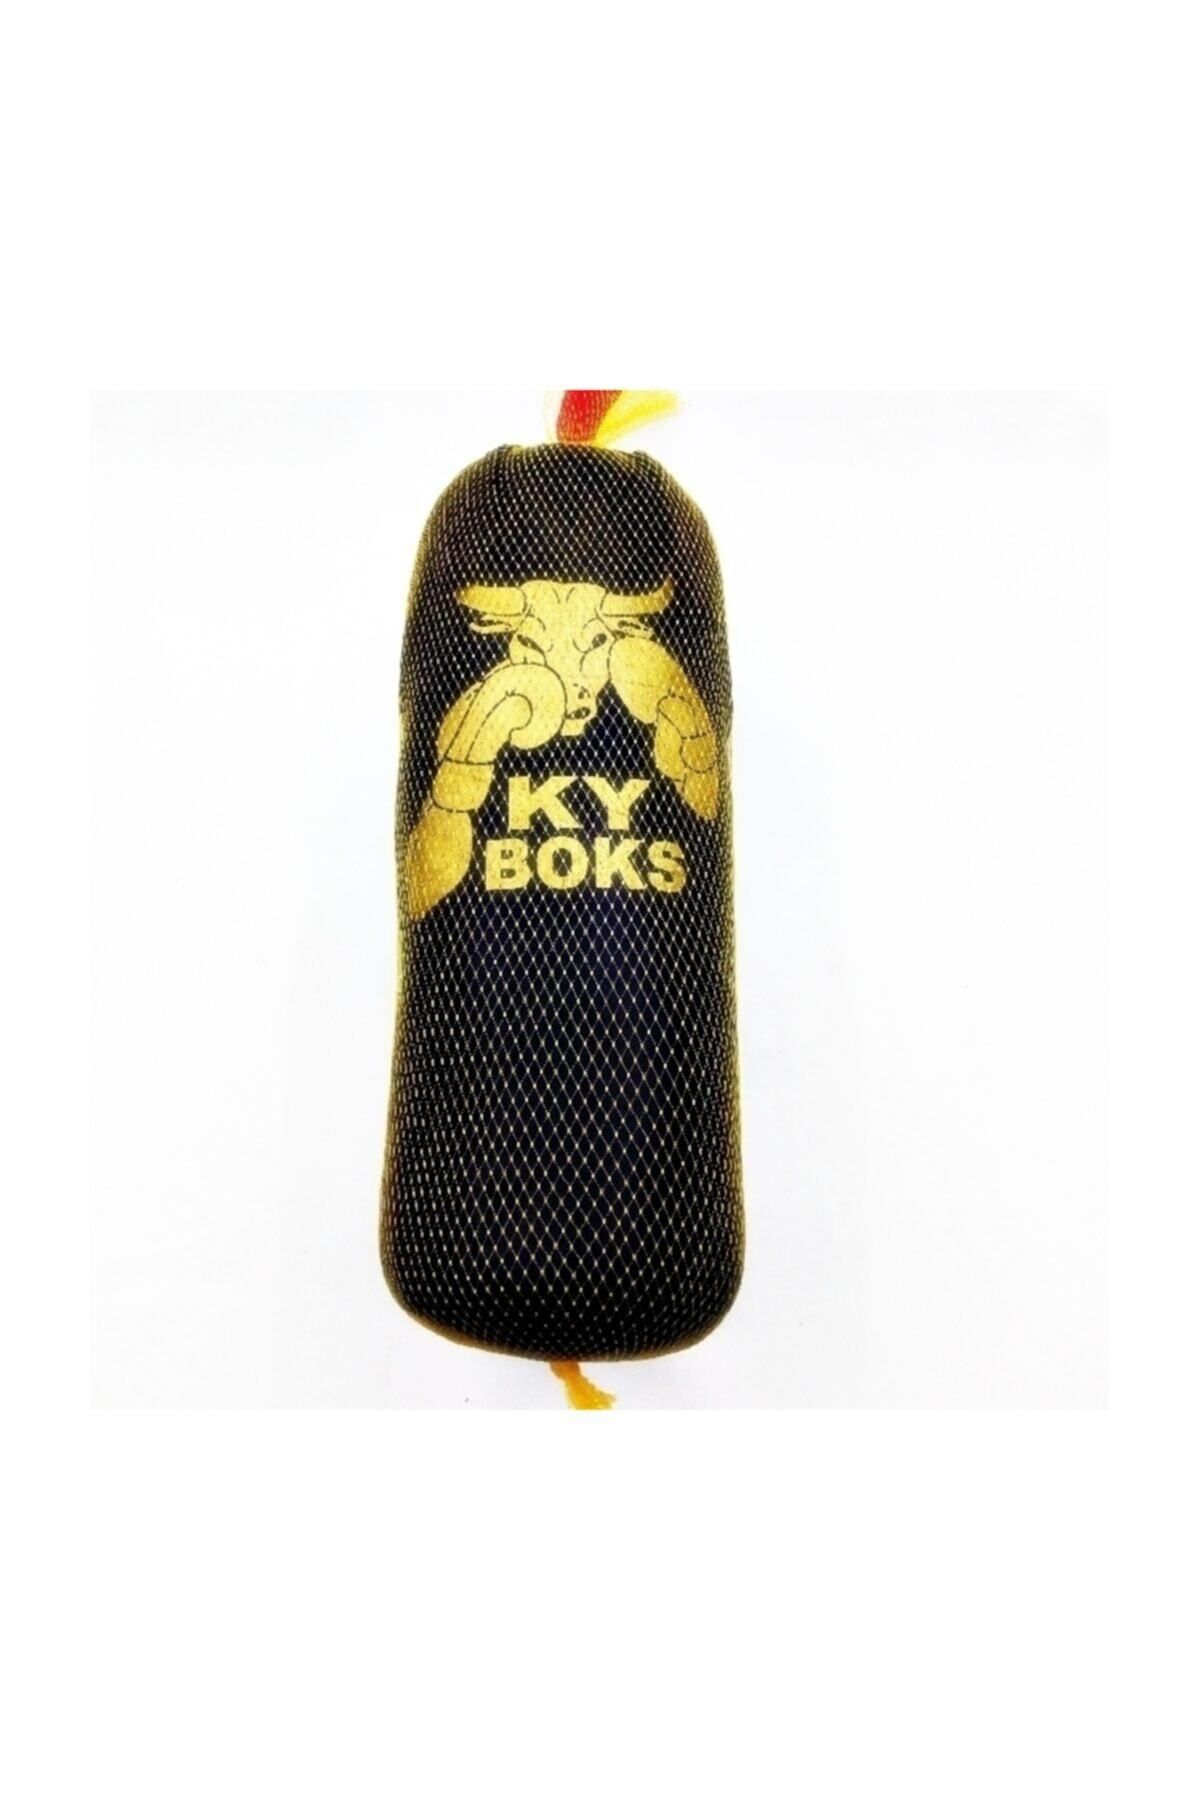 Efe Ky Boks Boks Torbası 50 cm